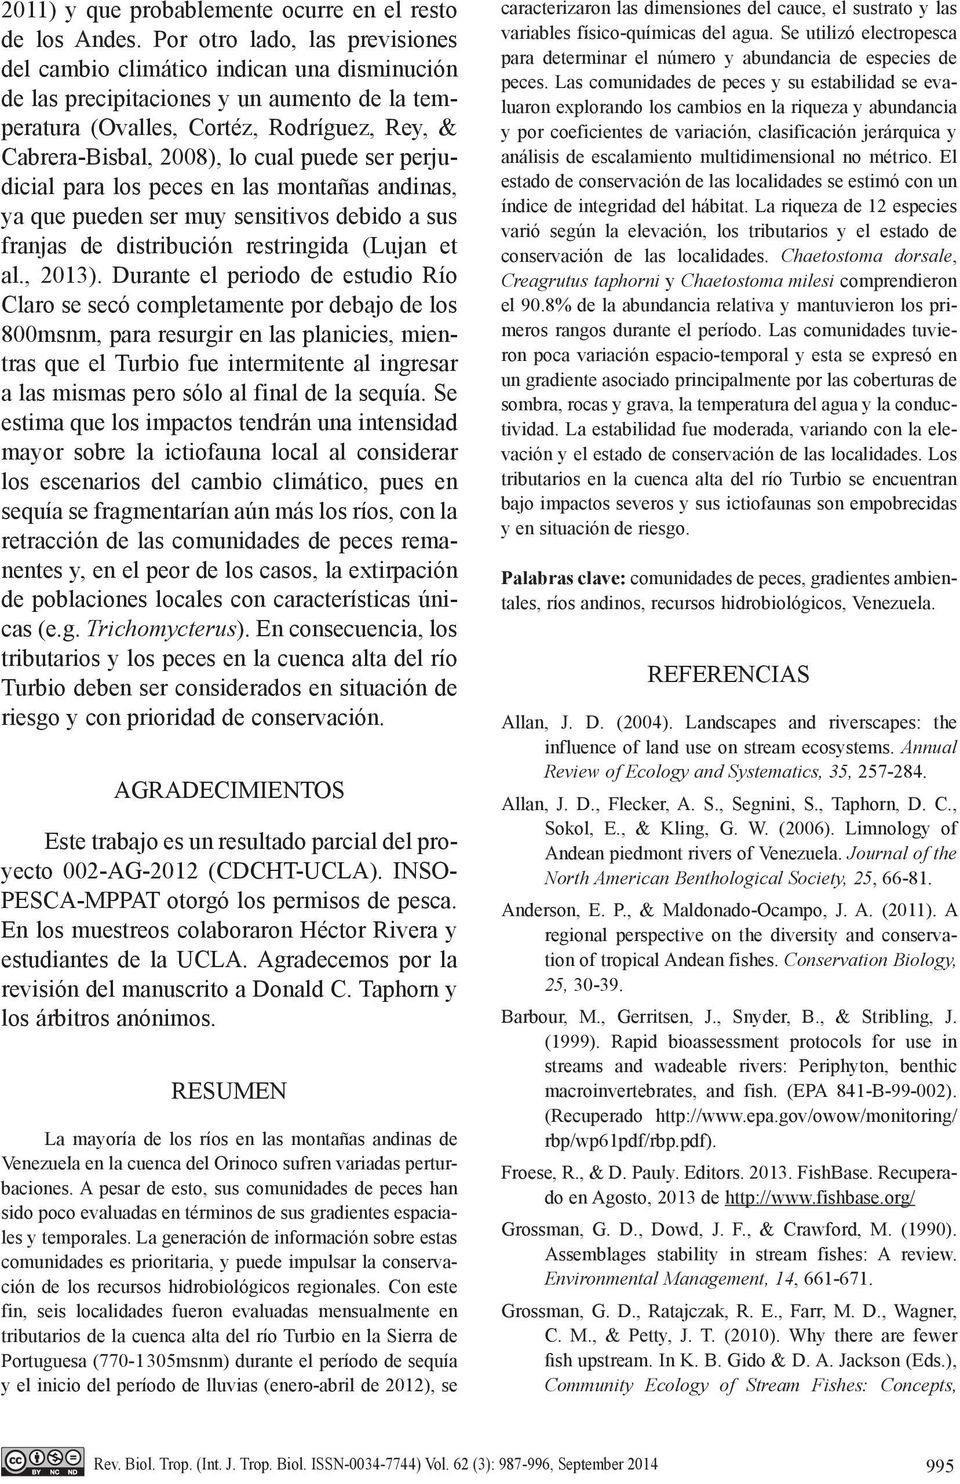 puede ser perjudicial para los peces en las montañas andinas, ya que pueden ser muy sensitivos debido a sus franjas de distribución restringida (Lujan et al., 2013).